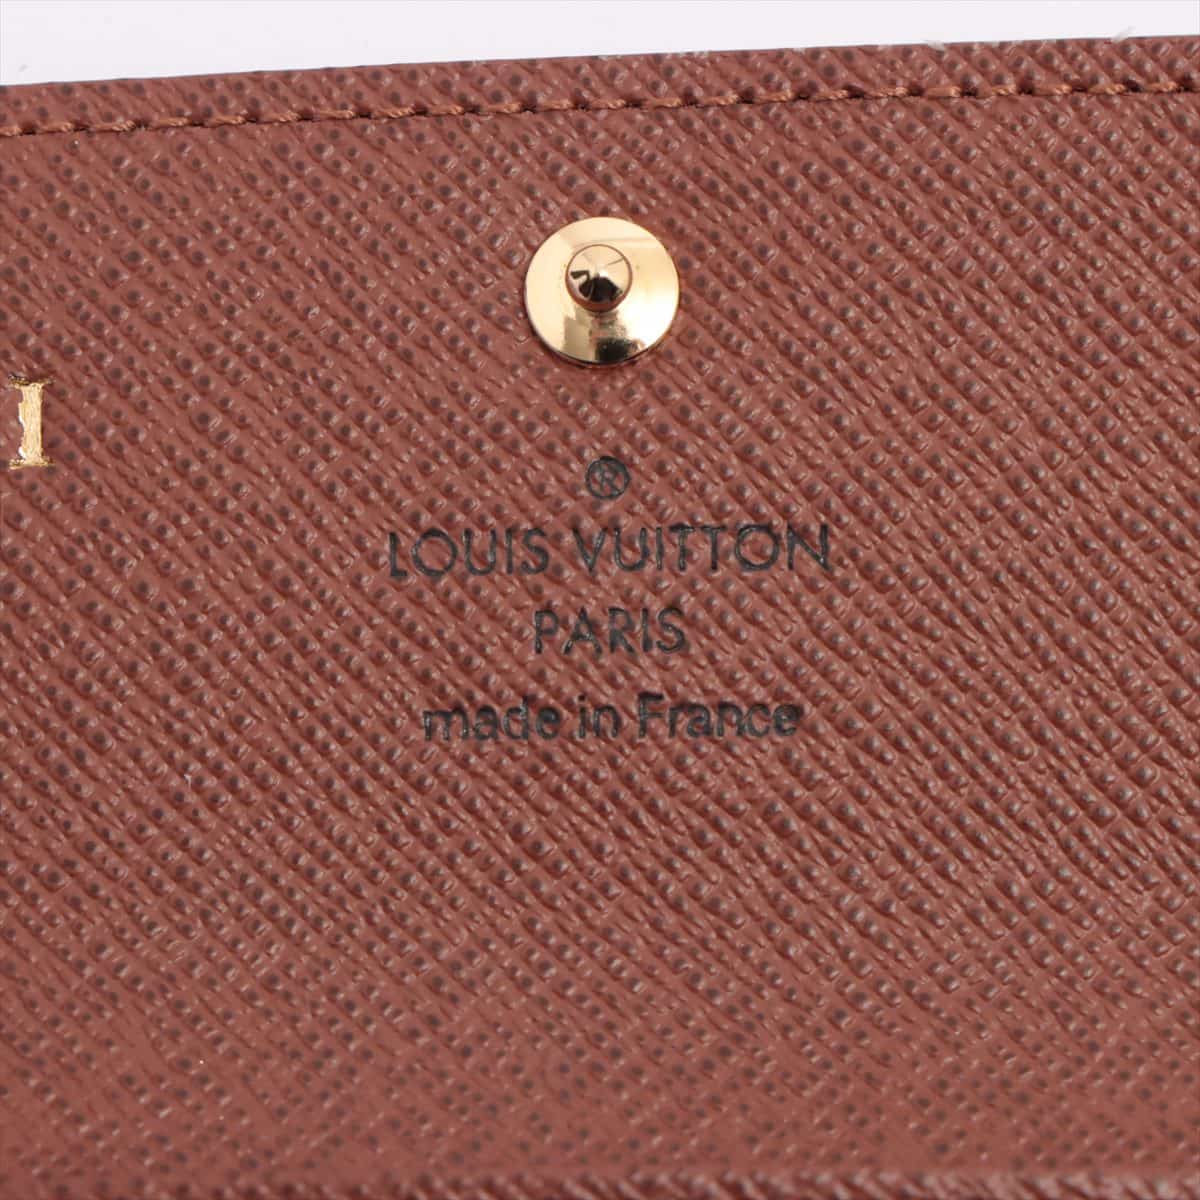 Louis Vuitton Monogram Multiclés 4 M69517 Brown Key case